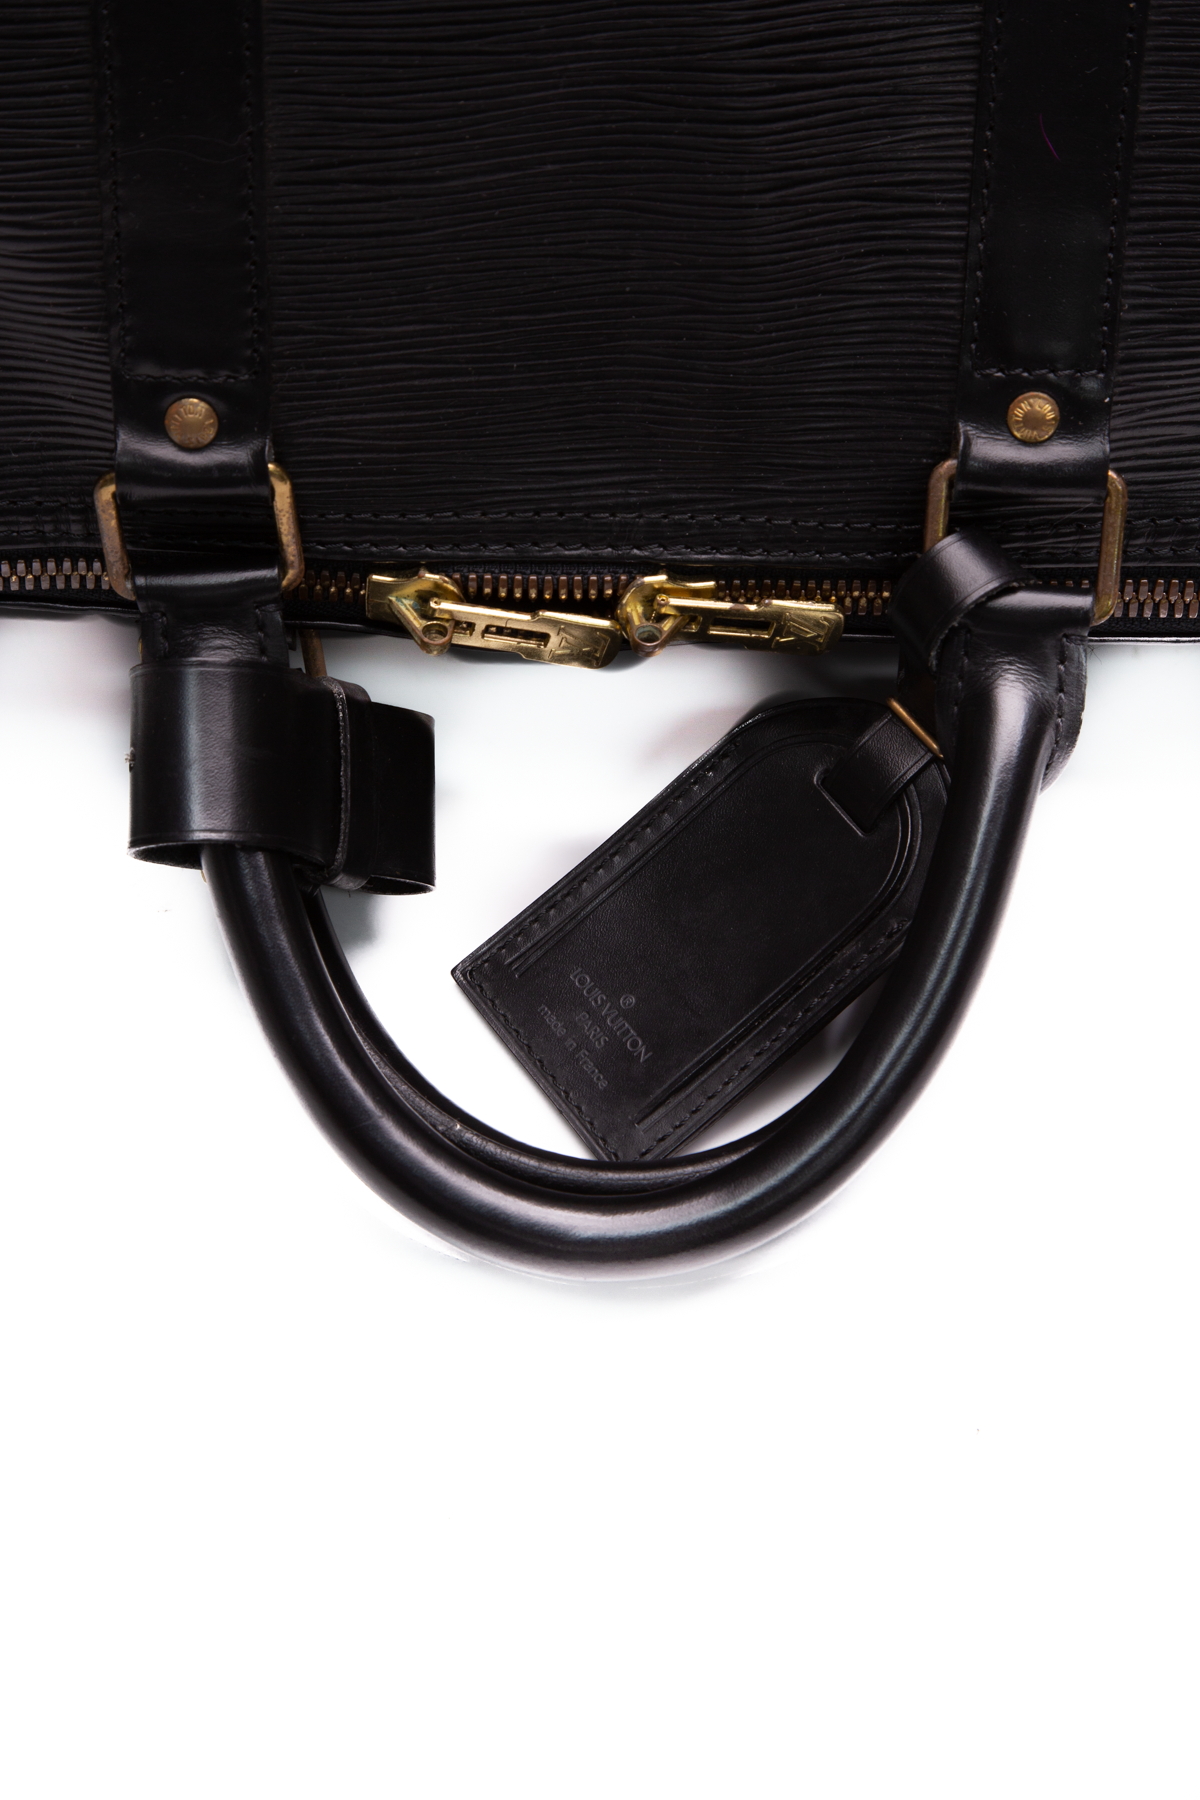 Louis Vuitton Vintage Epi Keepall 50 Travel Bag - Couture USA